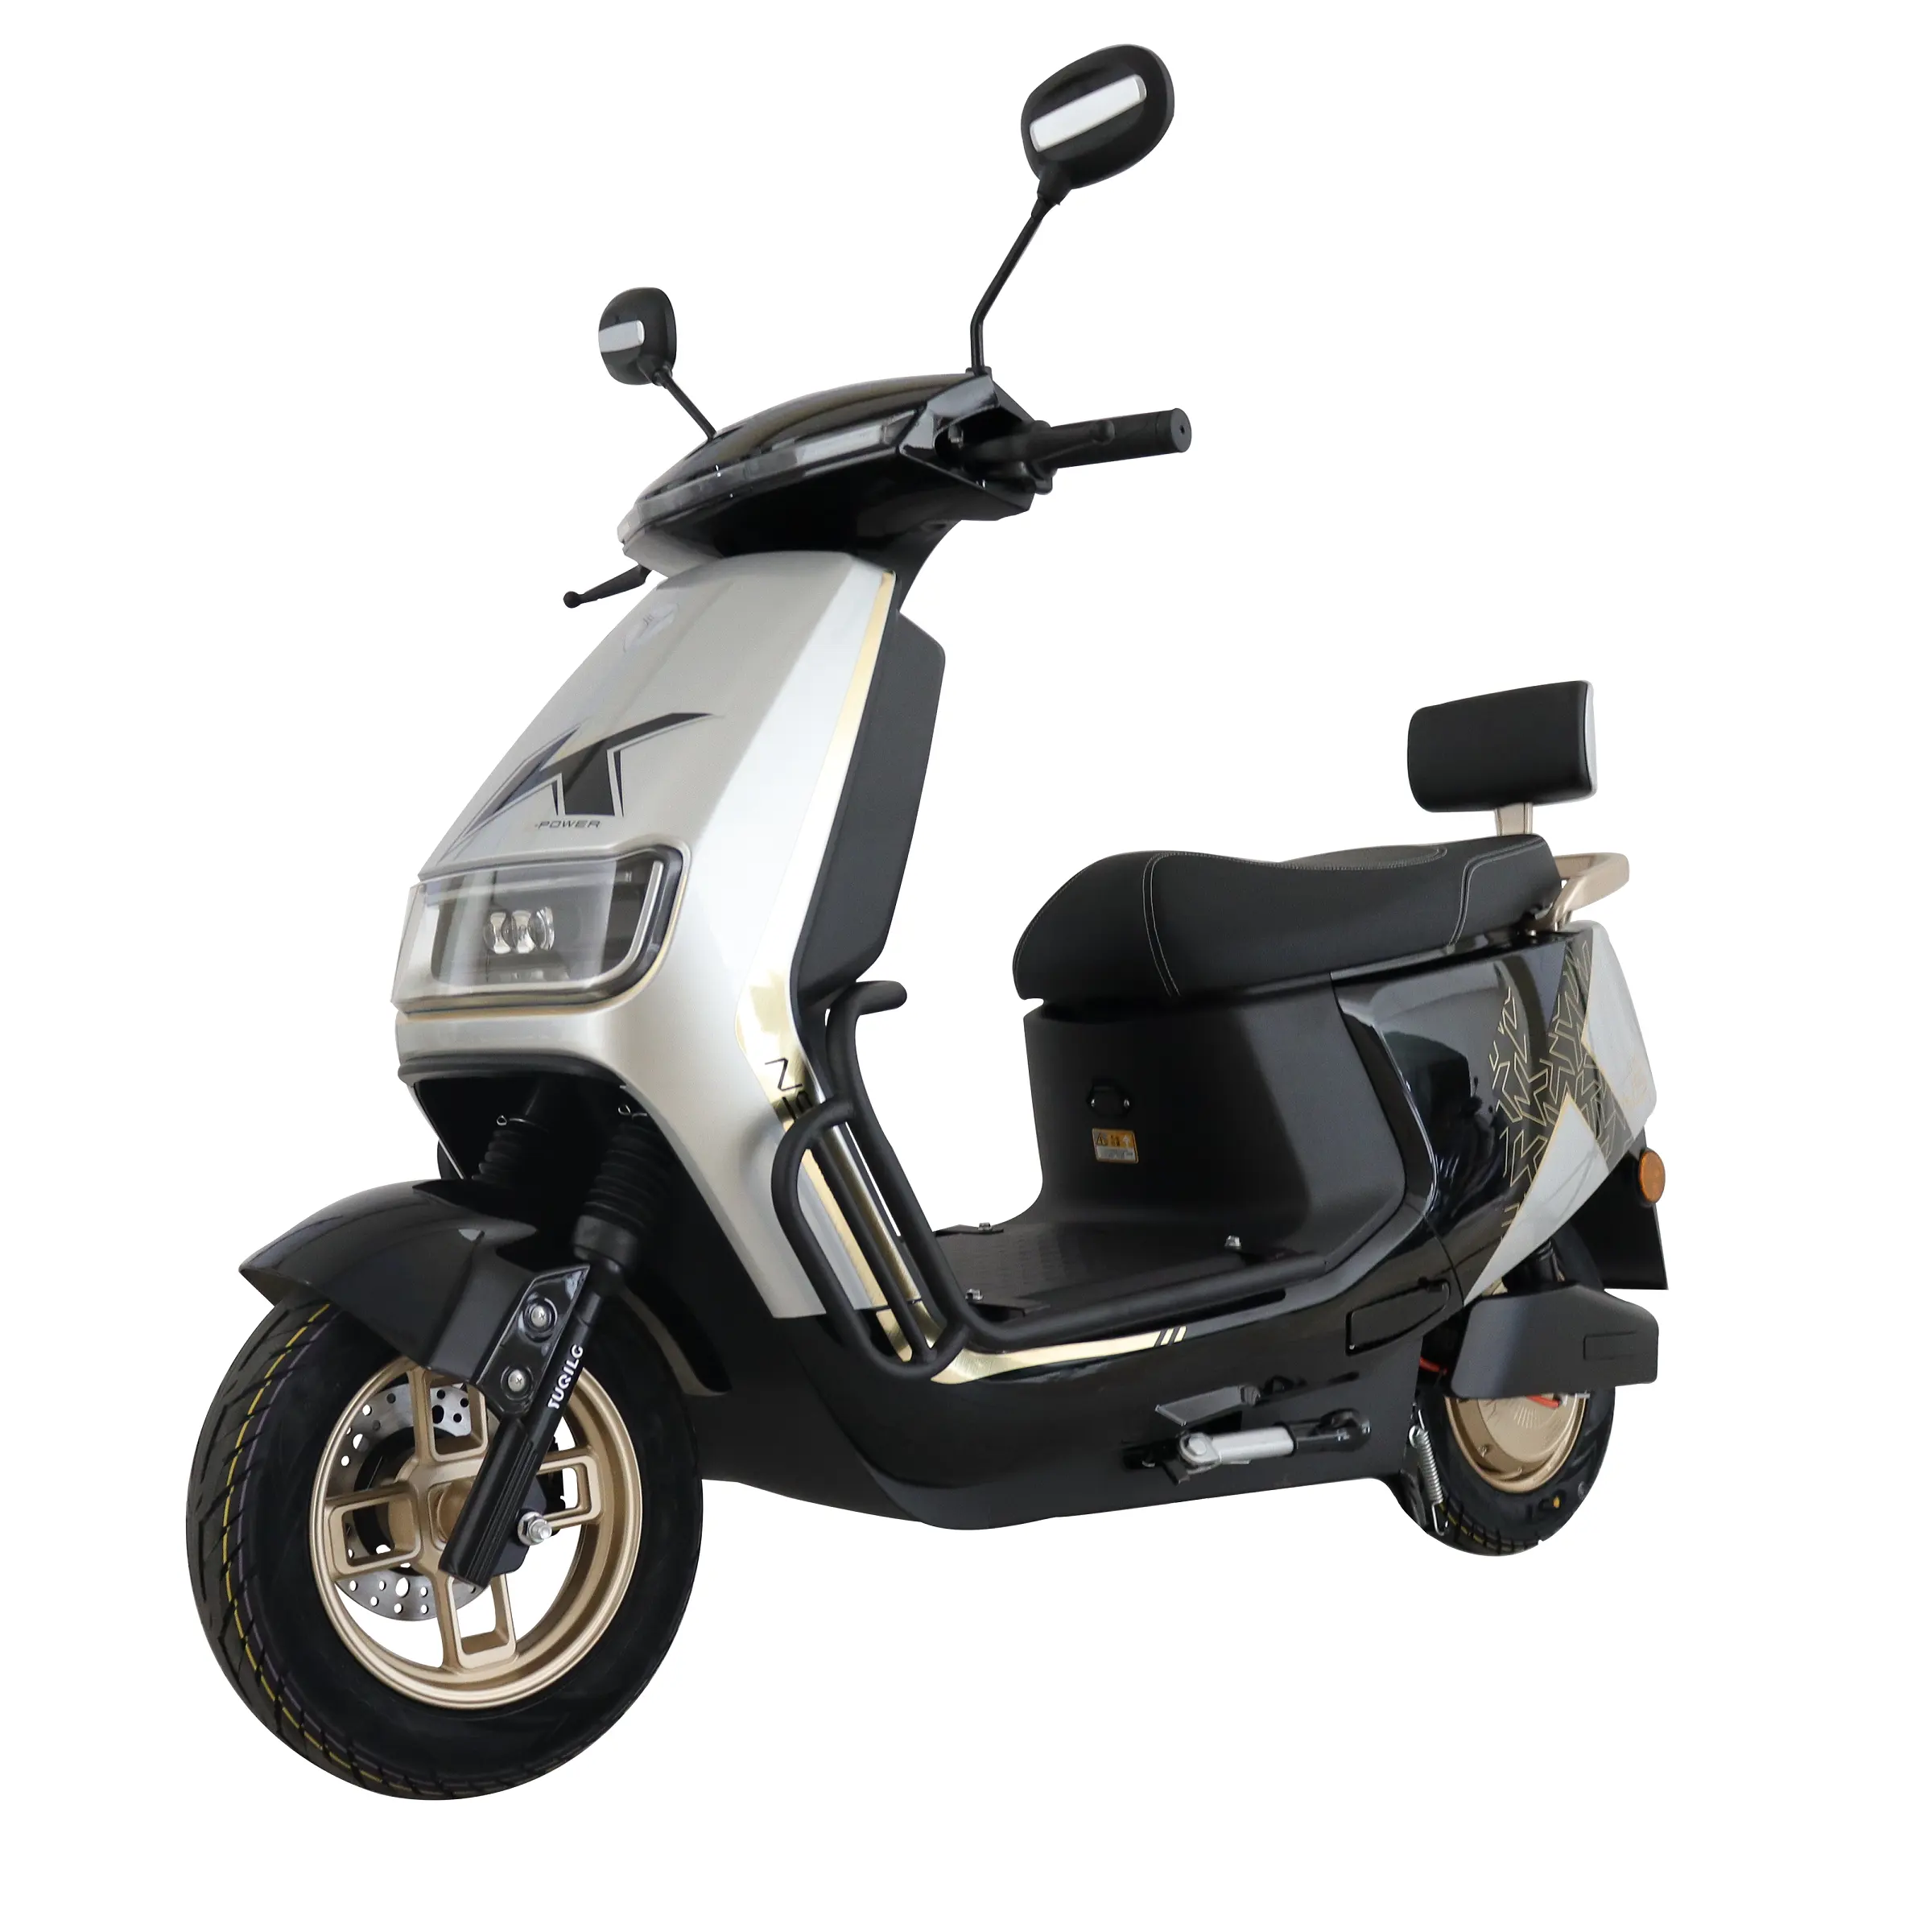 Дешевый взрослый скутер 3000 Вт Электрический скутер для взрослых Лидер продаж Электрический мотоцикл электровелосипед